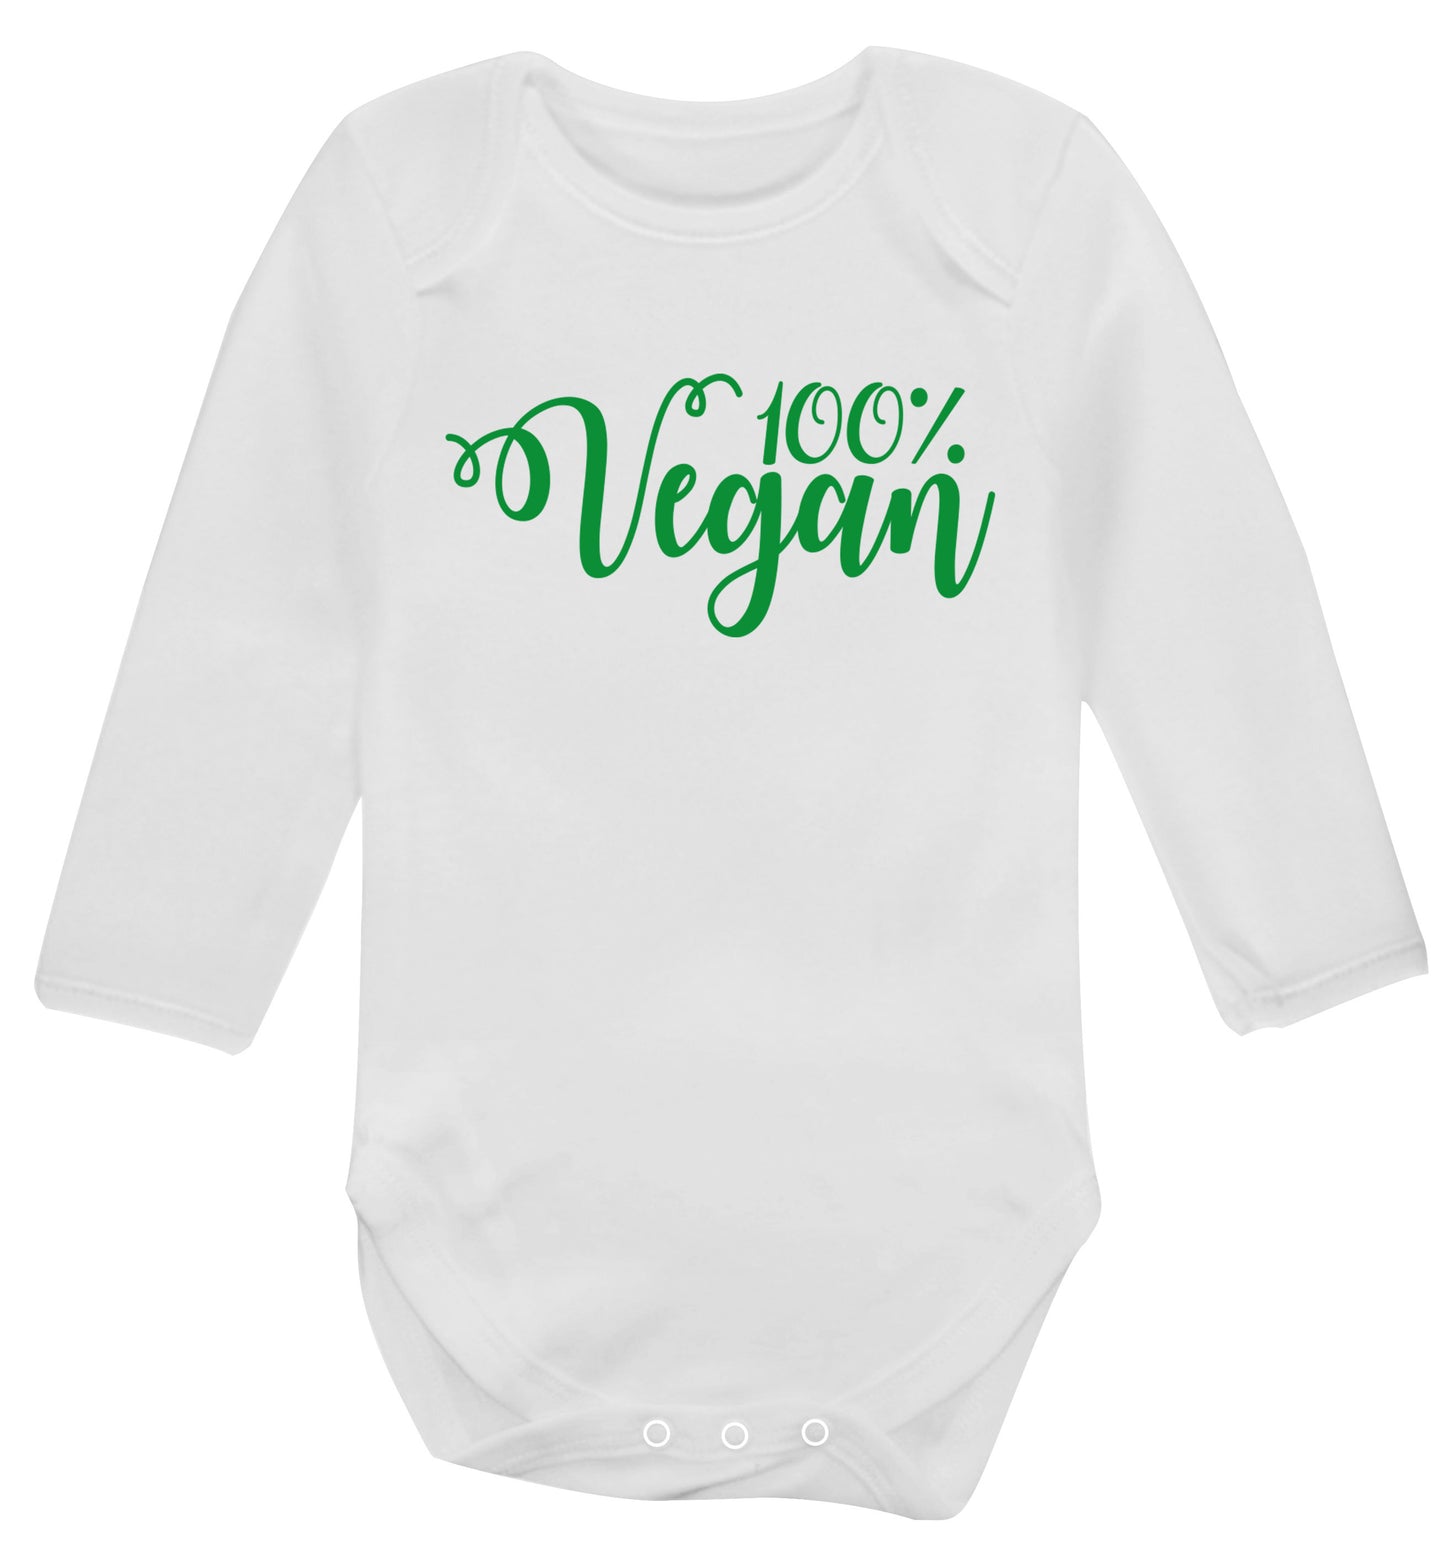 100% Vegan Baby Vest long sleeved white 6-12 months